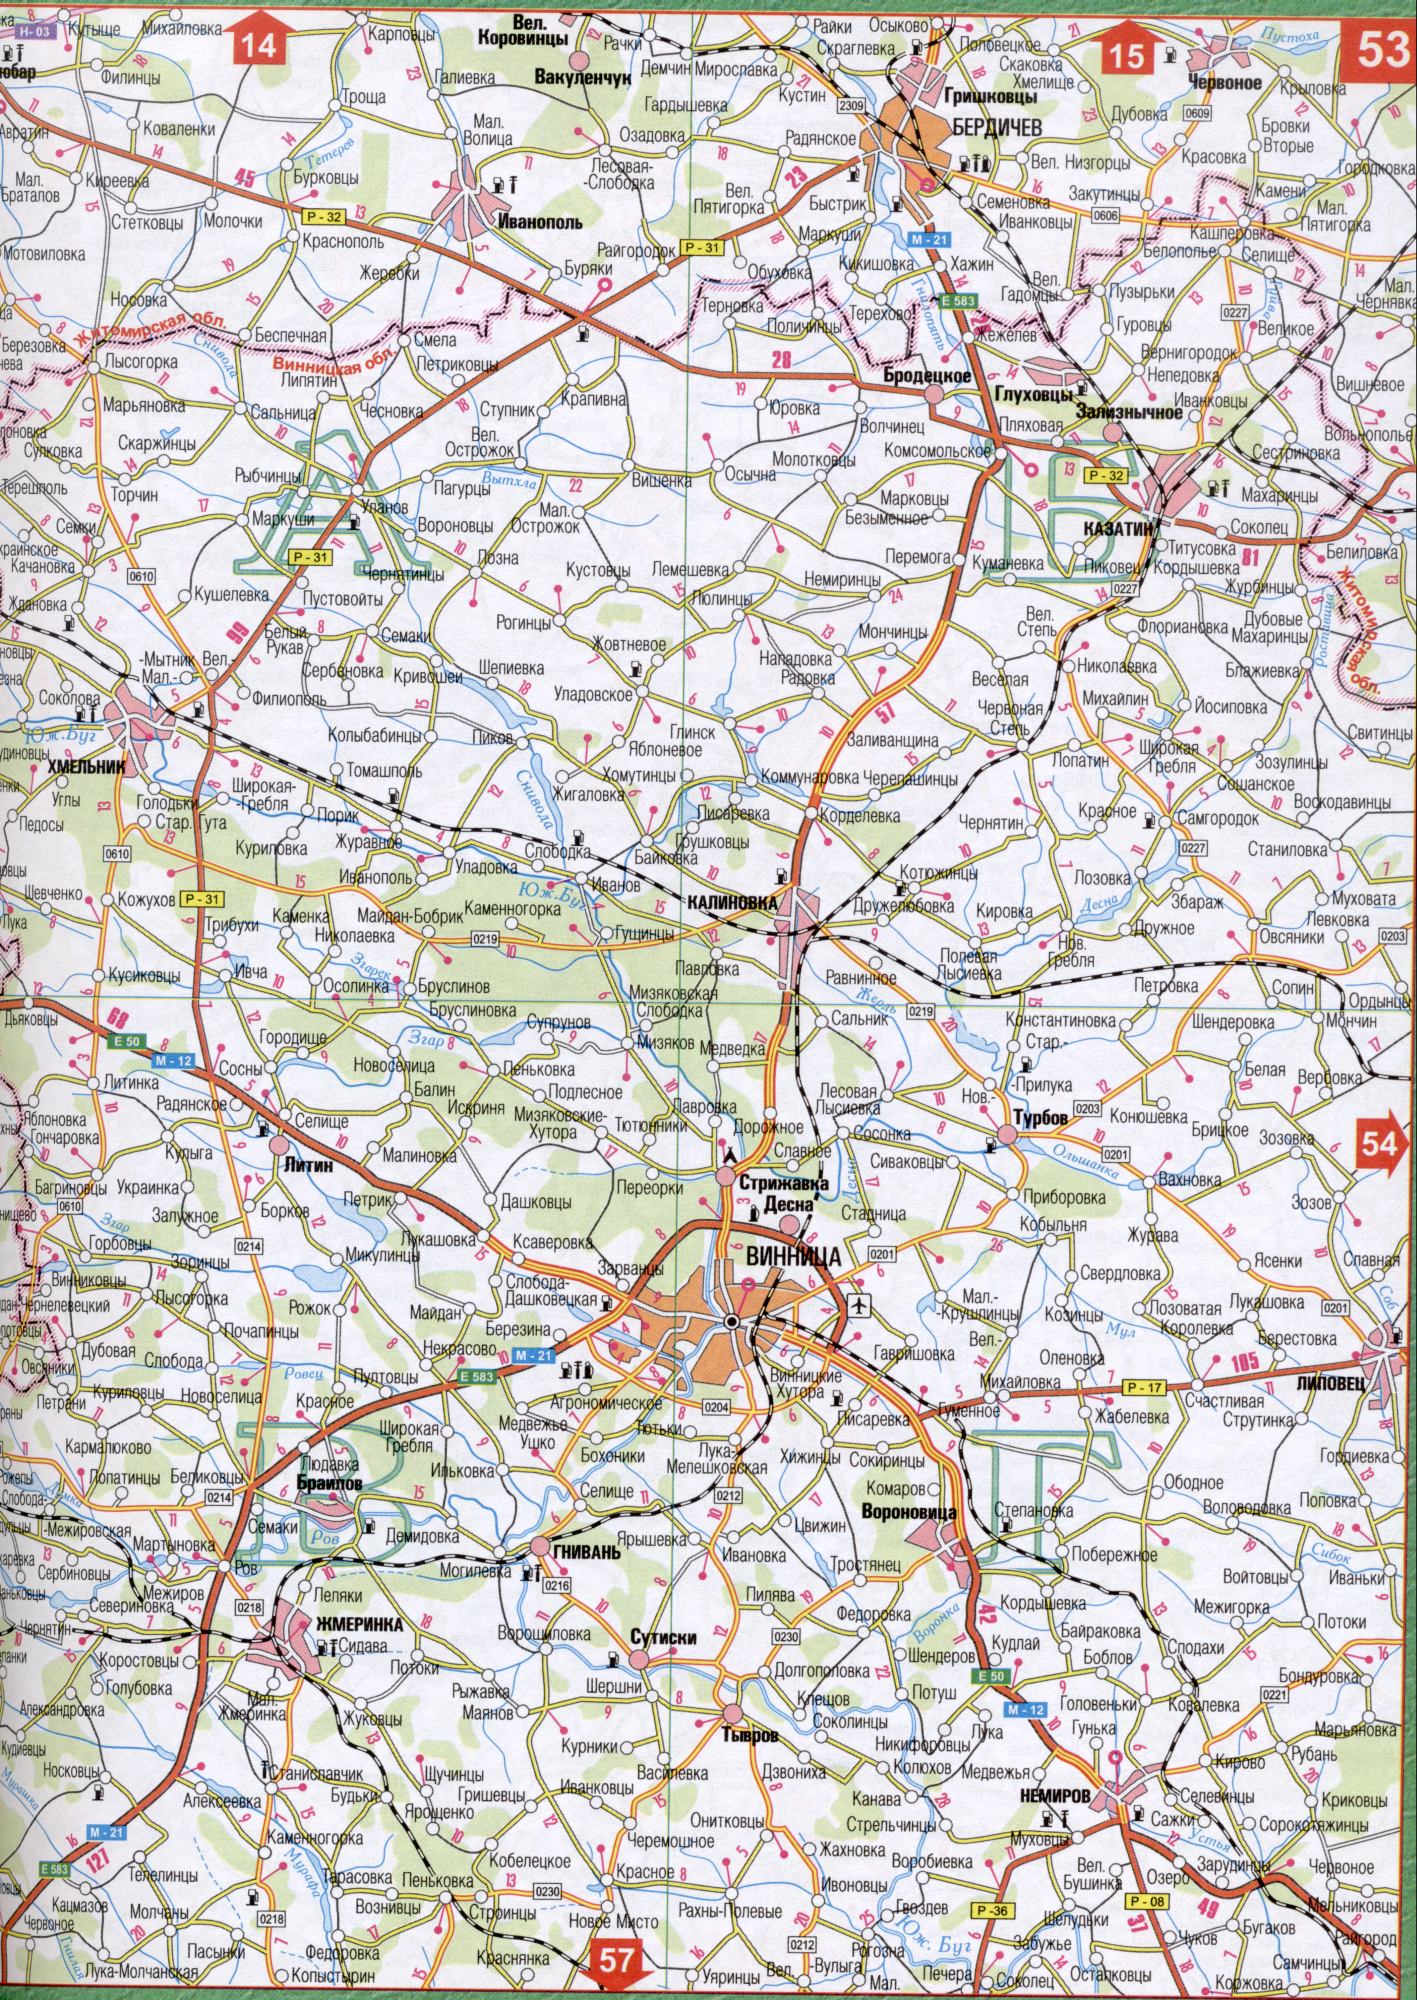 Karte von Winnyzja Region der Ukraine. Eine detaillierte Karte der Maßstab 1cm: 5000m Winnyzja Region. Frei, B0 - Eiche Maharintsy, Weitbootfahren, Bubbles, Berdichev, Tyutyunnik, Raygorod, Iwanopil